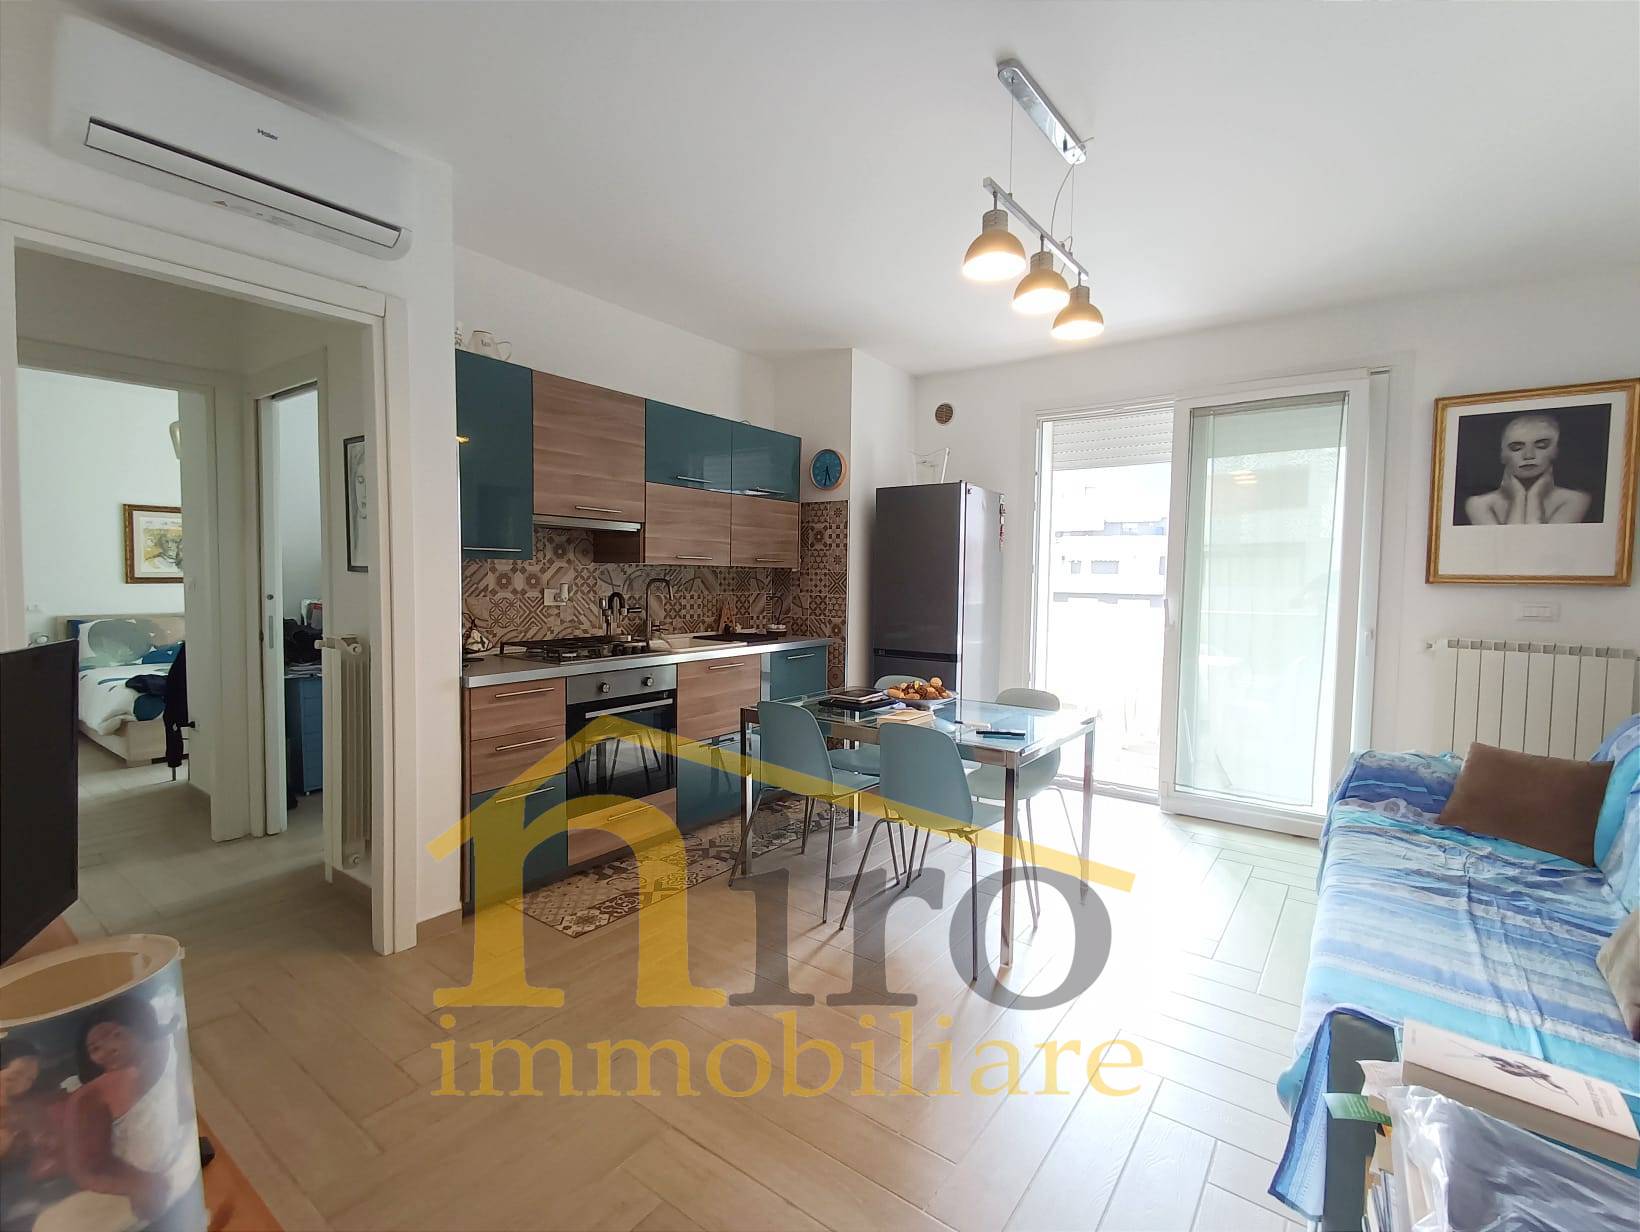 Appartamento in vendita a Francavilla al Mare, 3 locali, prezzo € 160.000 | PortaleAgenzieImmobiliari.it